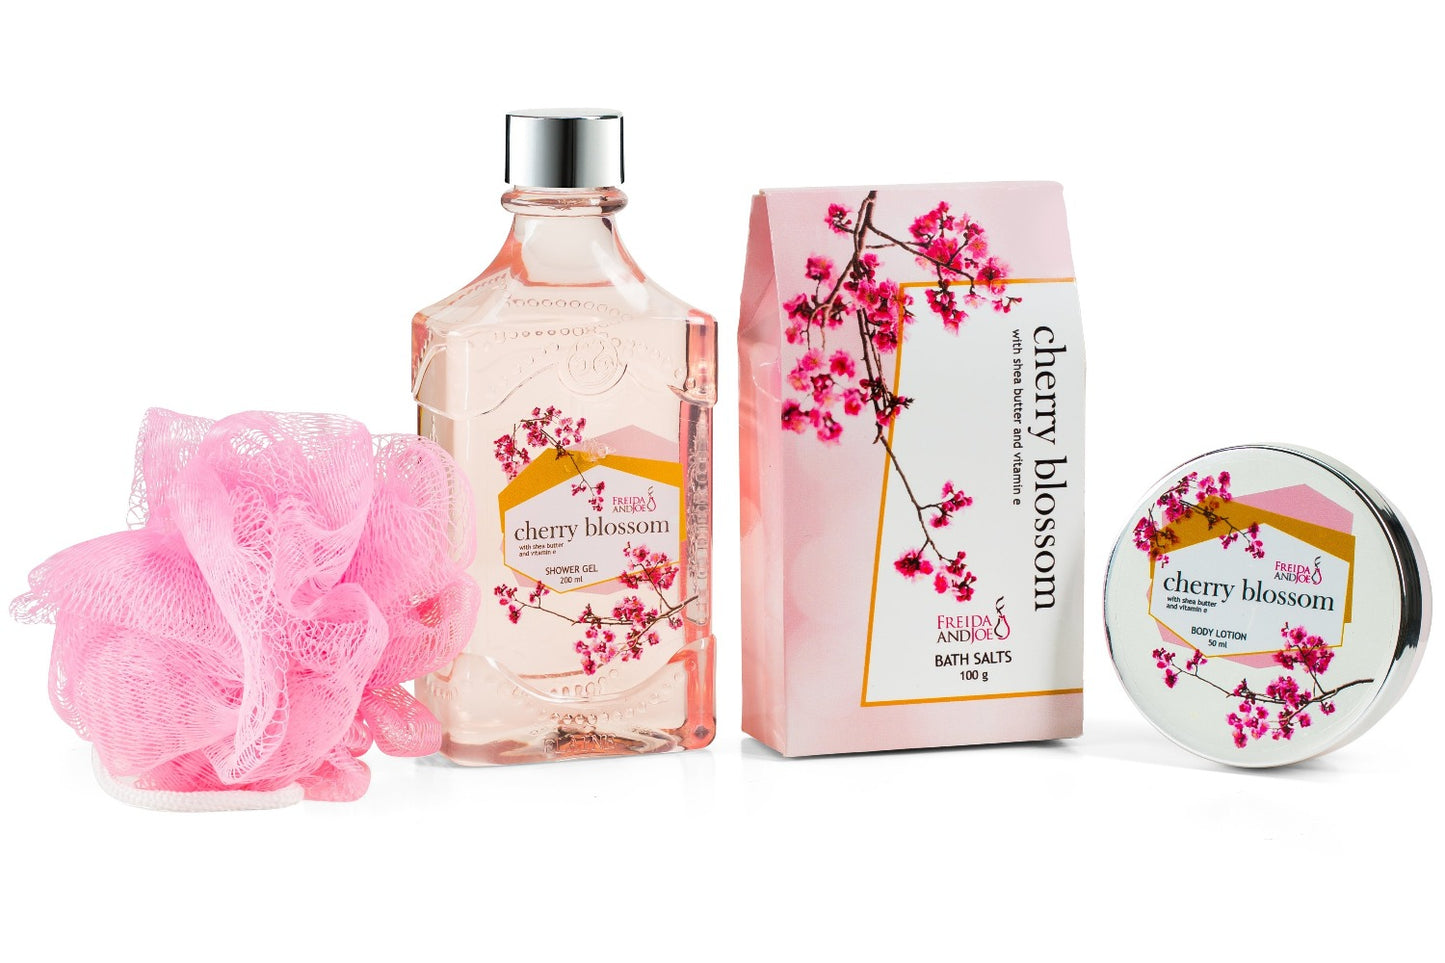 Cherry Blossom Bath & Body Spa Gift Set in Wheelbarrow Caddie